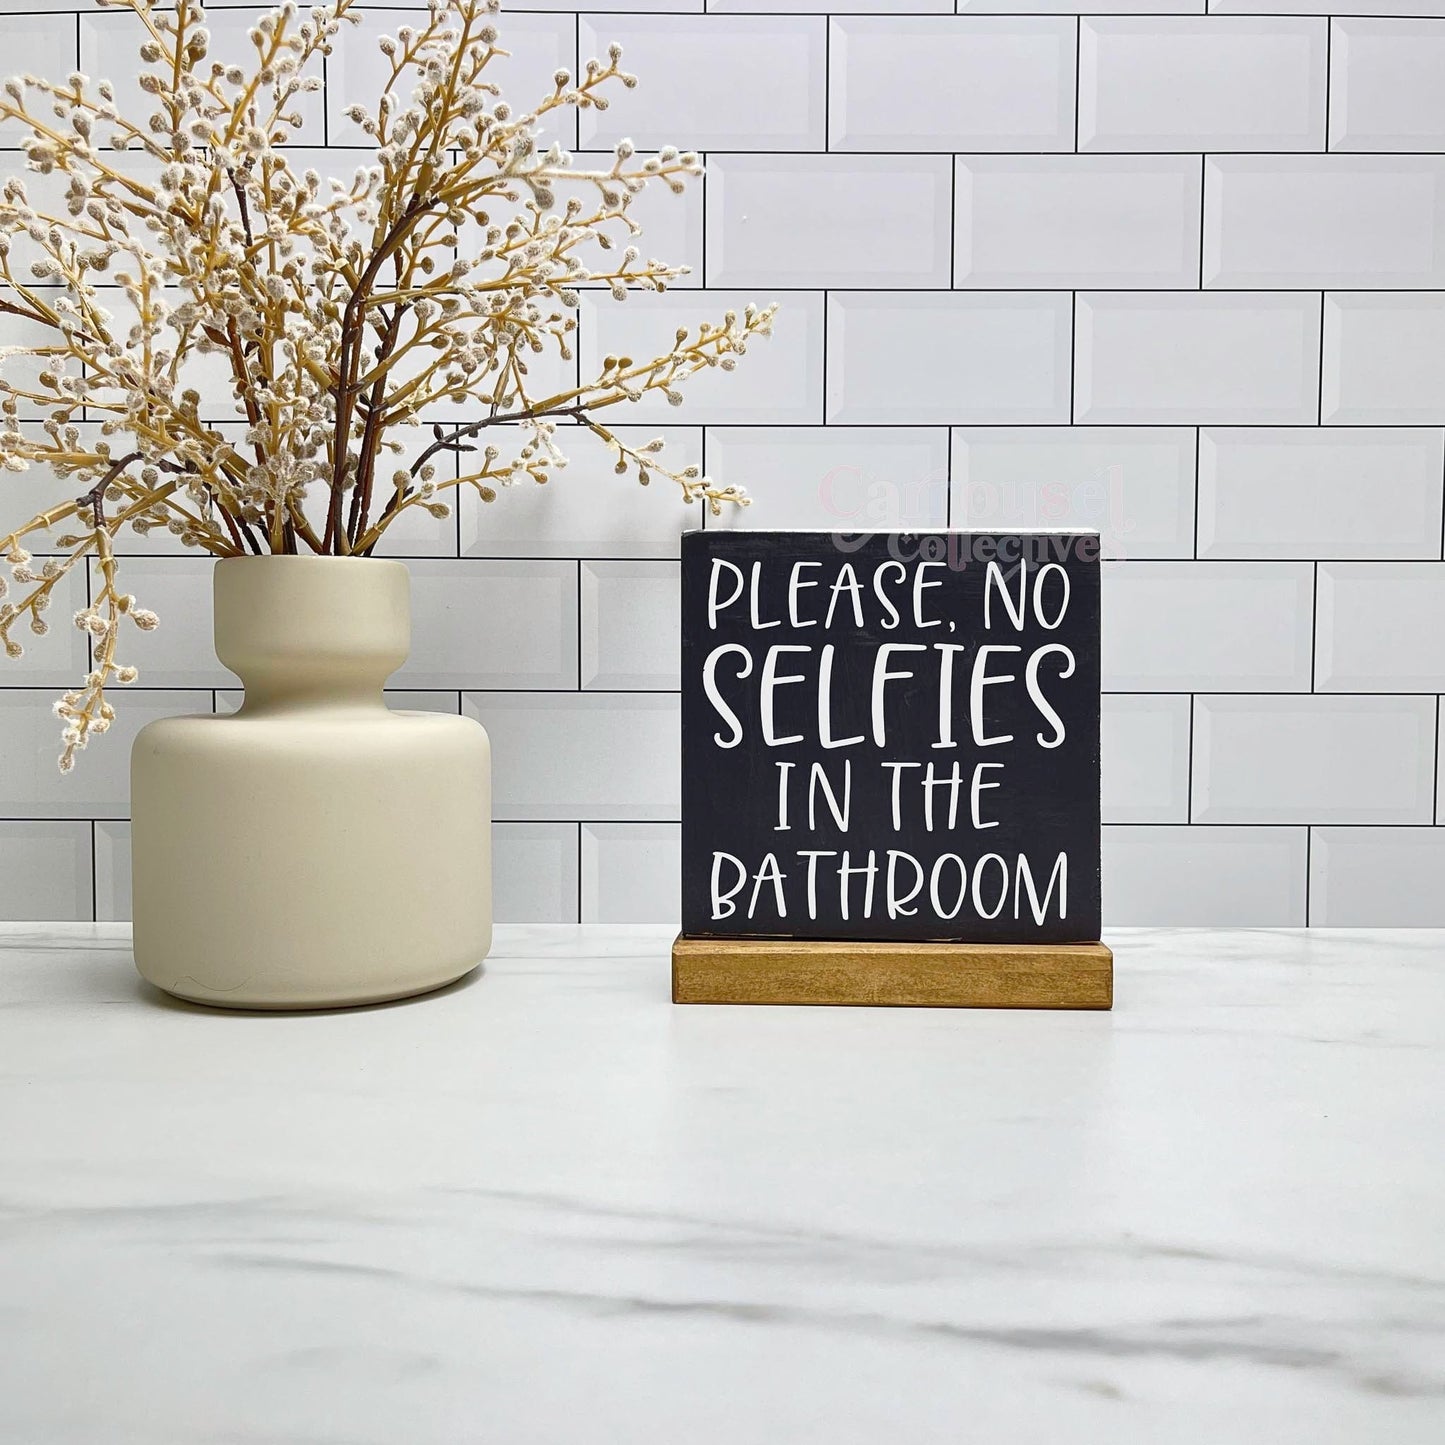 No selfies in the bathroom wood sign, bathroom wood sign, bathroom decor